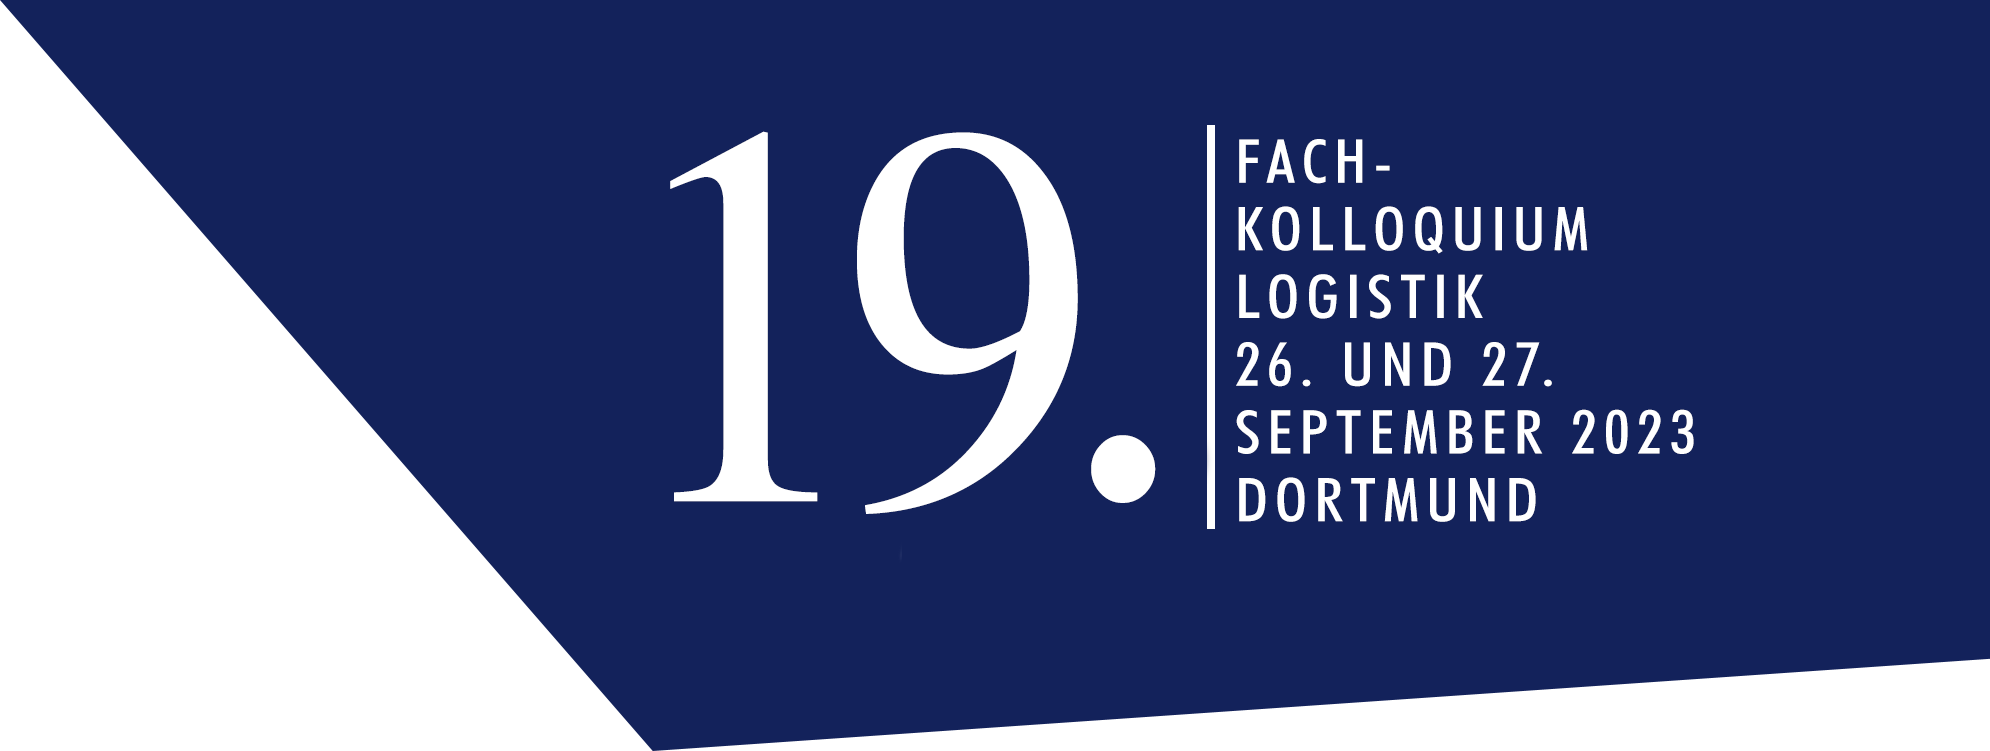 Blaues Grafikelement zum 19. Fachkolloquium am 27. und 27. September 2023 in Dortmund